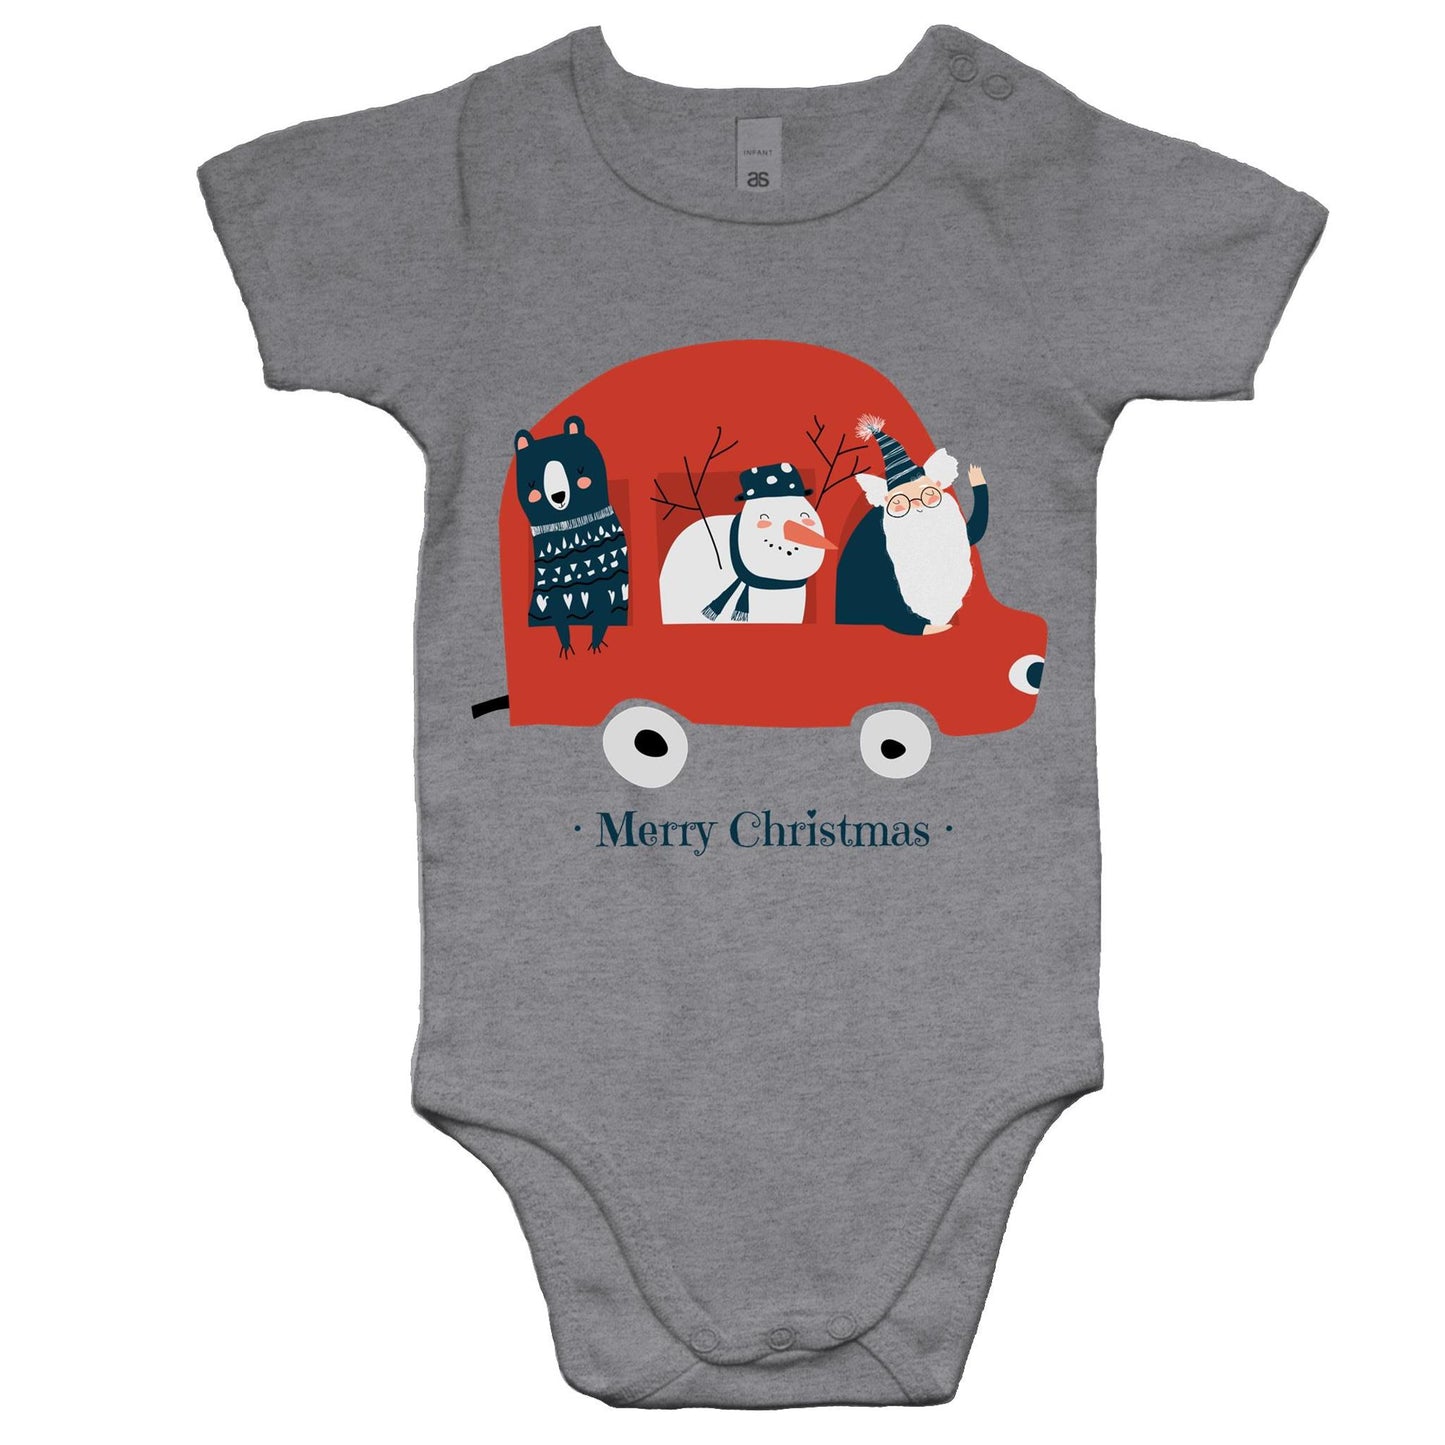 Santa Car - Baby Onesie Romper Grey Marle Christmas Baby Bodysuit Merry Christmas